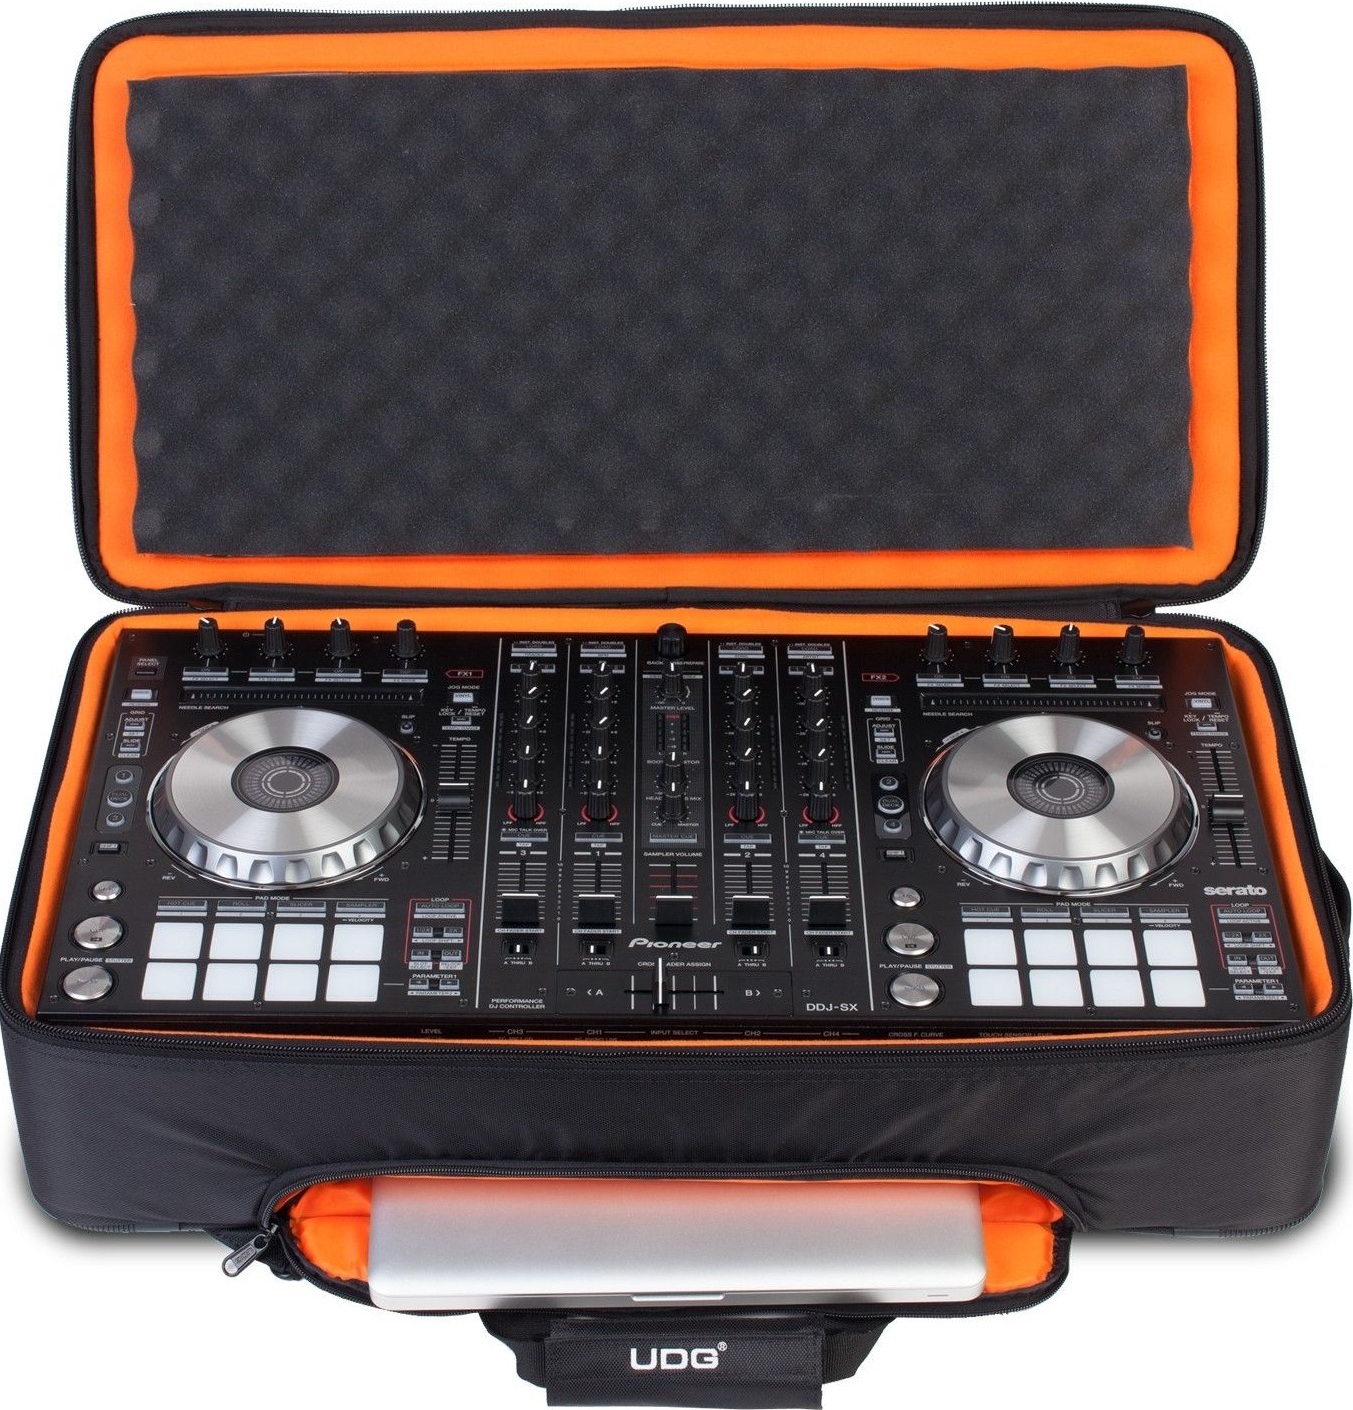 Udg Ultimate Midi Controller Backpack Large Black/orange Inside Mk2 - DJ trolley - Main picture